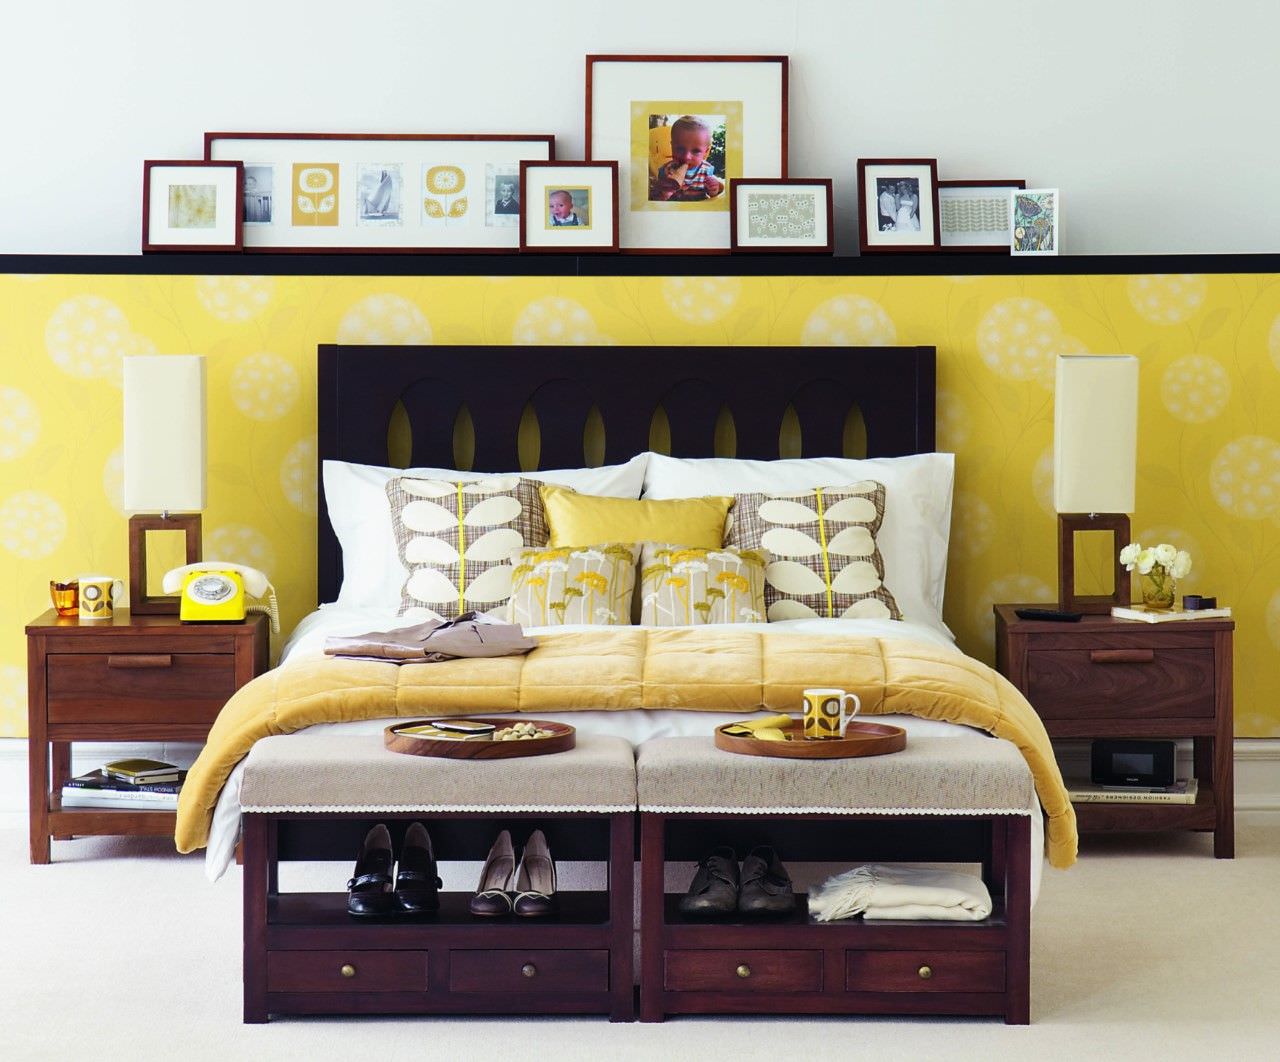 Thiết kế phòng ngủ màu nâu kết hợp màu vàng đầy tinh tế